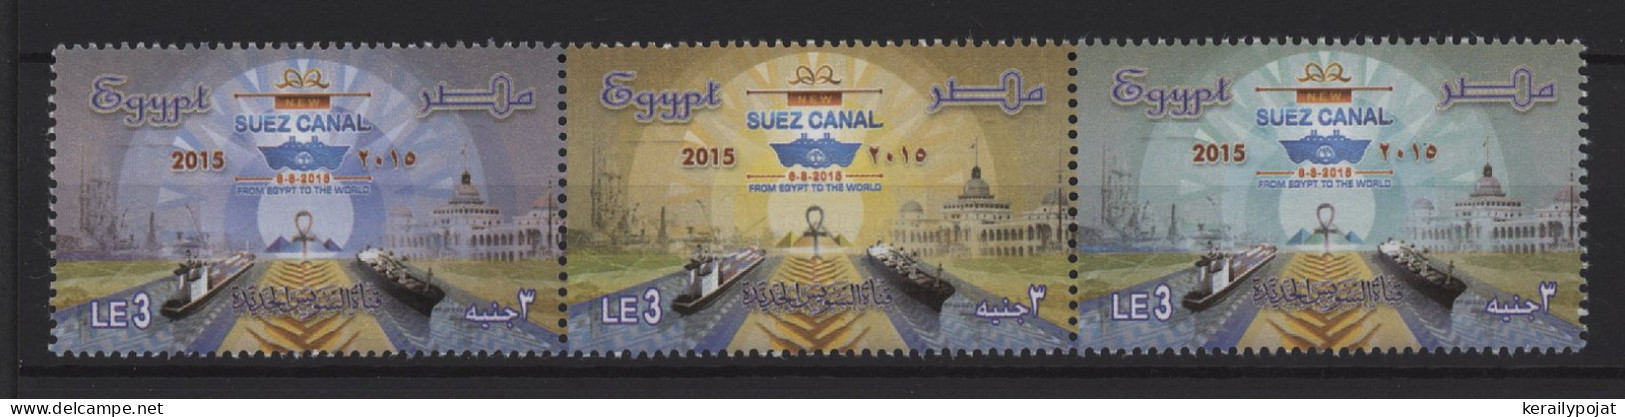 Egypt - 2015 New Suez Canal Strip MNH__(TH-26046) - Nuovi